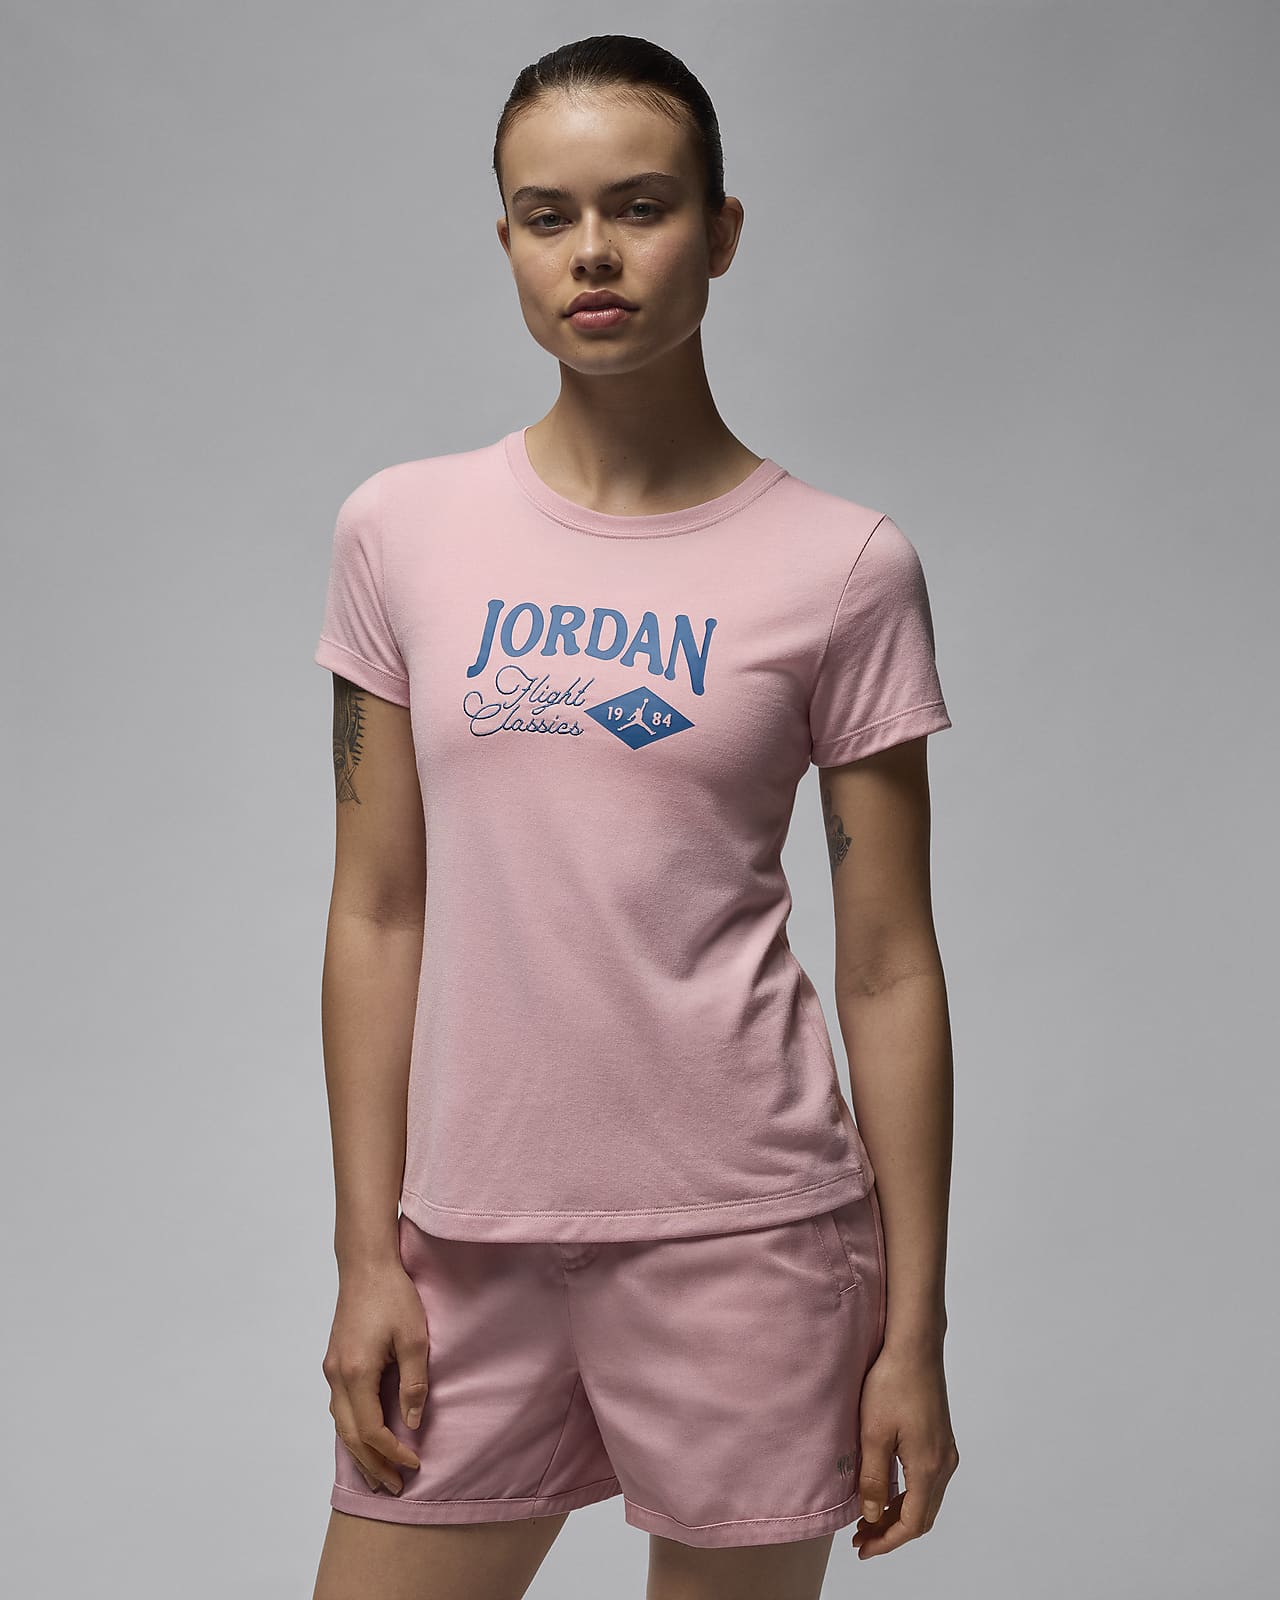 T-shirt Girlfriend avvolgente Jordan – Donna